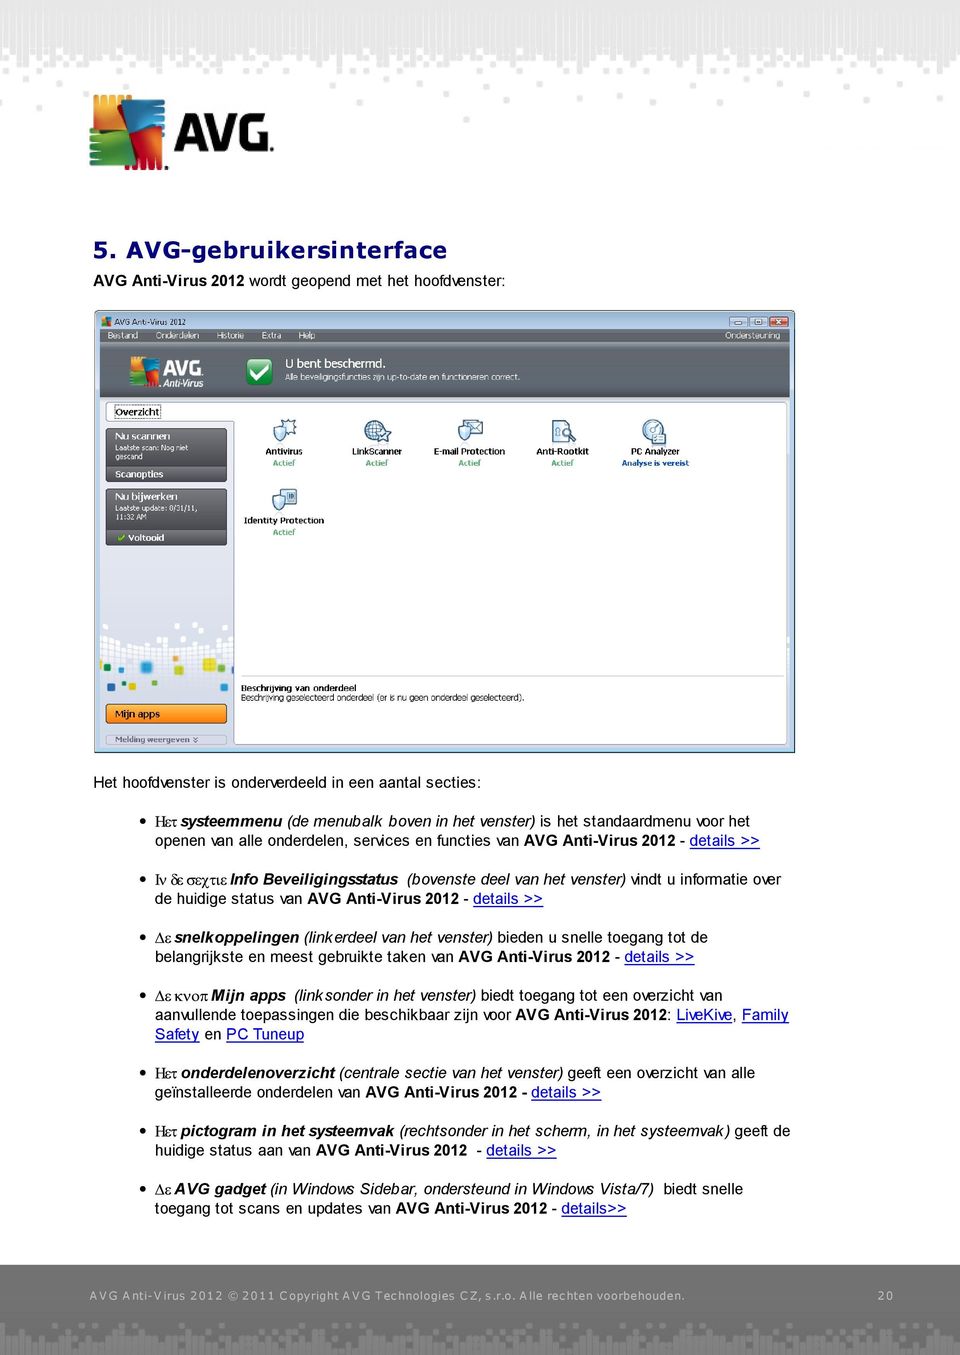 status van AVG Anti-Virus 2012 - details >> snelkoppelingen (link erdeel van het venster) bieden u snelle toegang tot de belangrijkste en meest gebruikte taken van AVG Anti-Virus 2012 - details >>